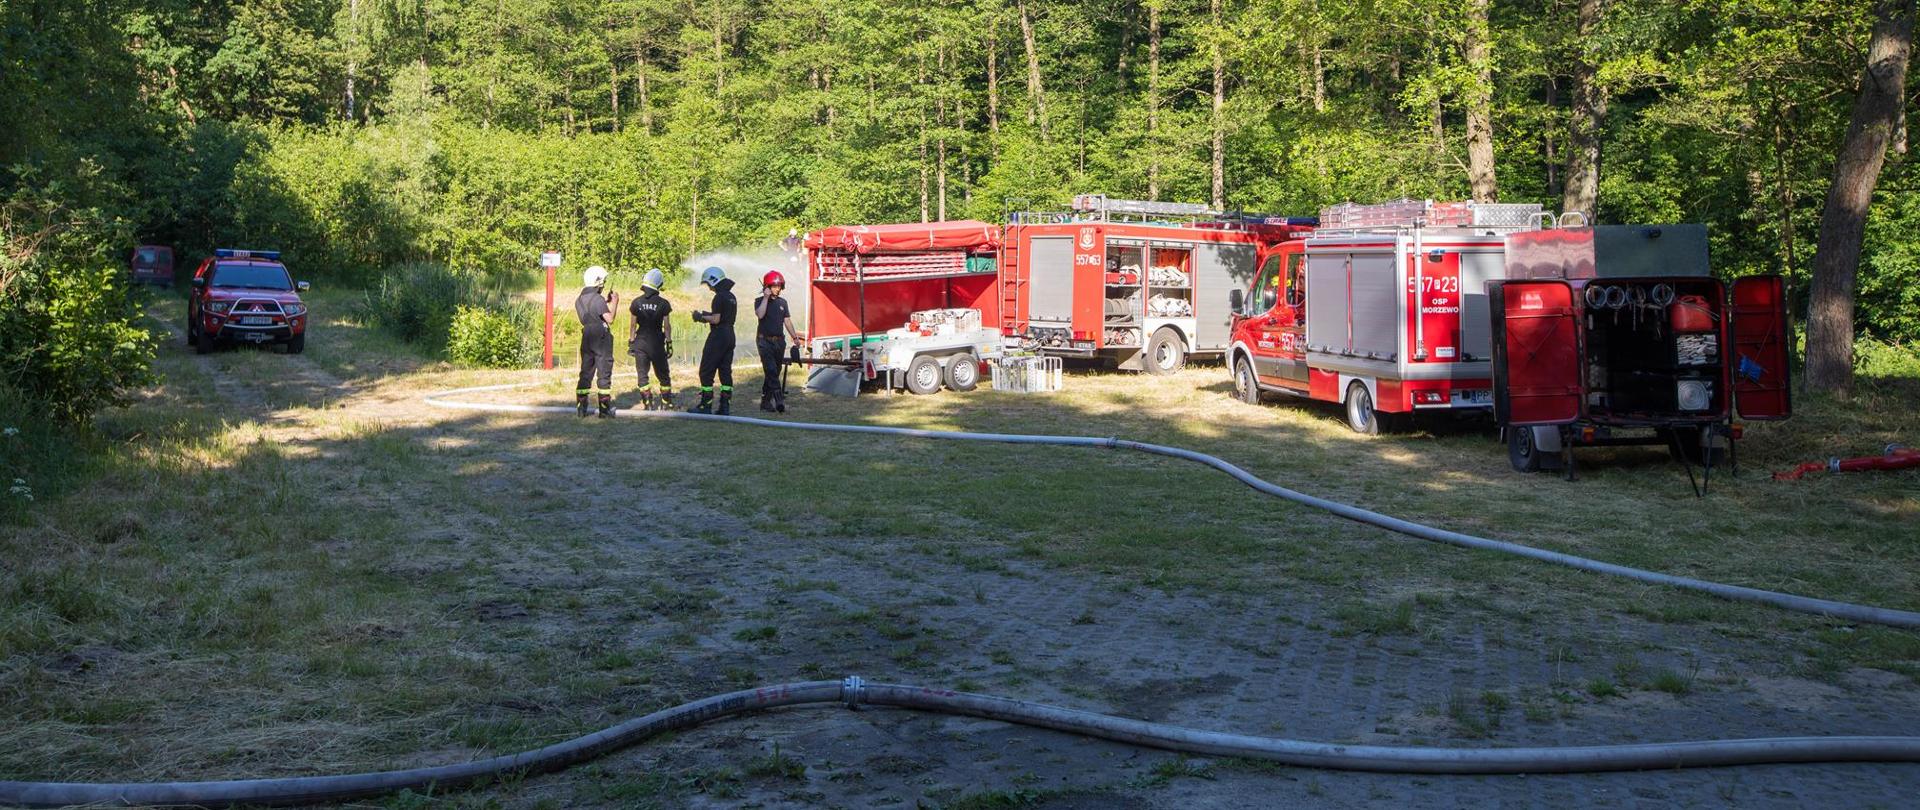 Na zdjęciu widać pojazdy pożarnicze oraz strażaków podczas ćwiczeń modułu wodnego Piła.